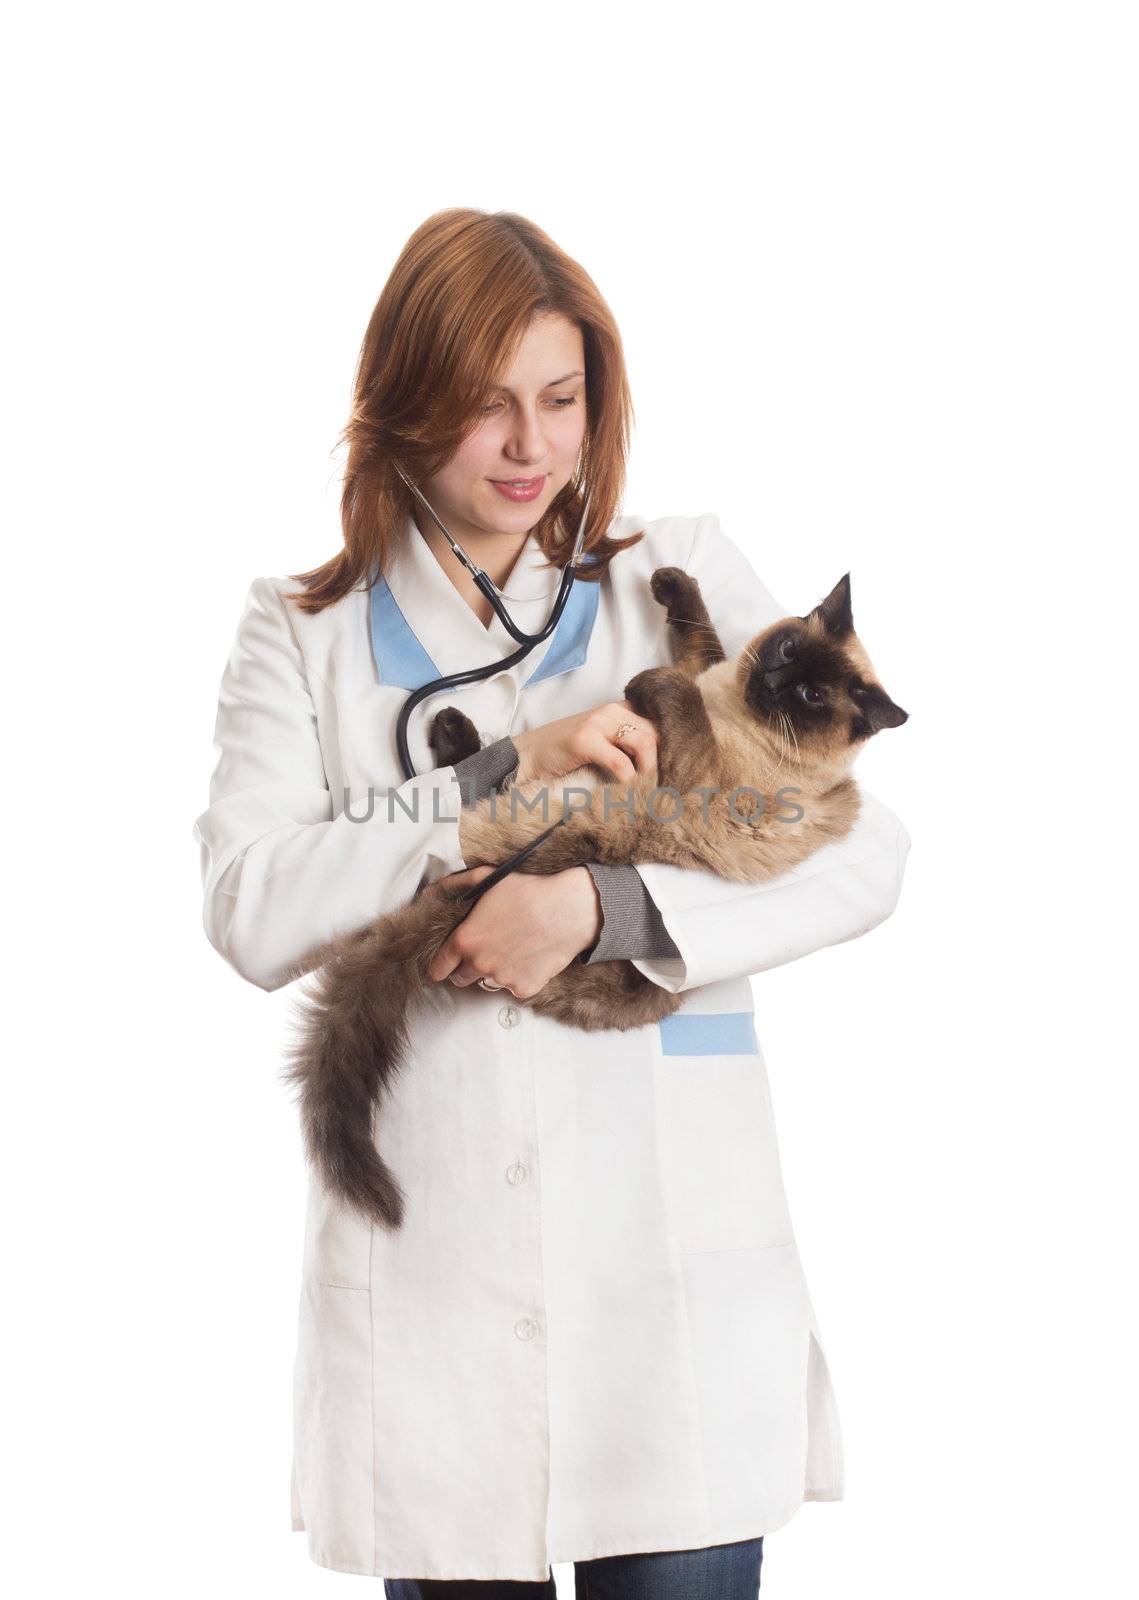 vet cat listens through a stethoscope by gurin_oleksandr